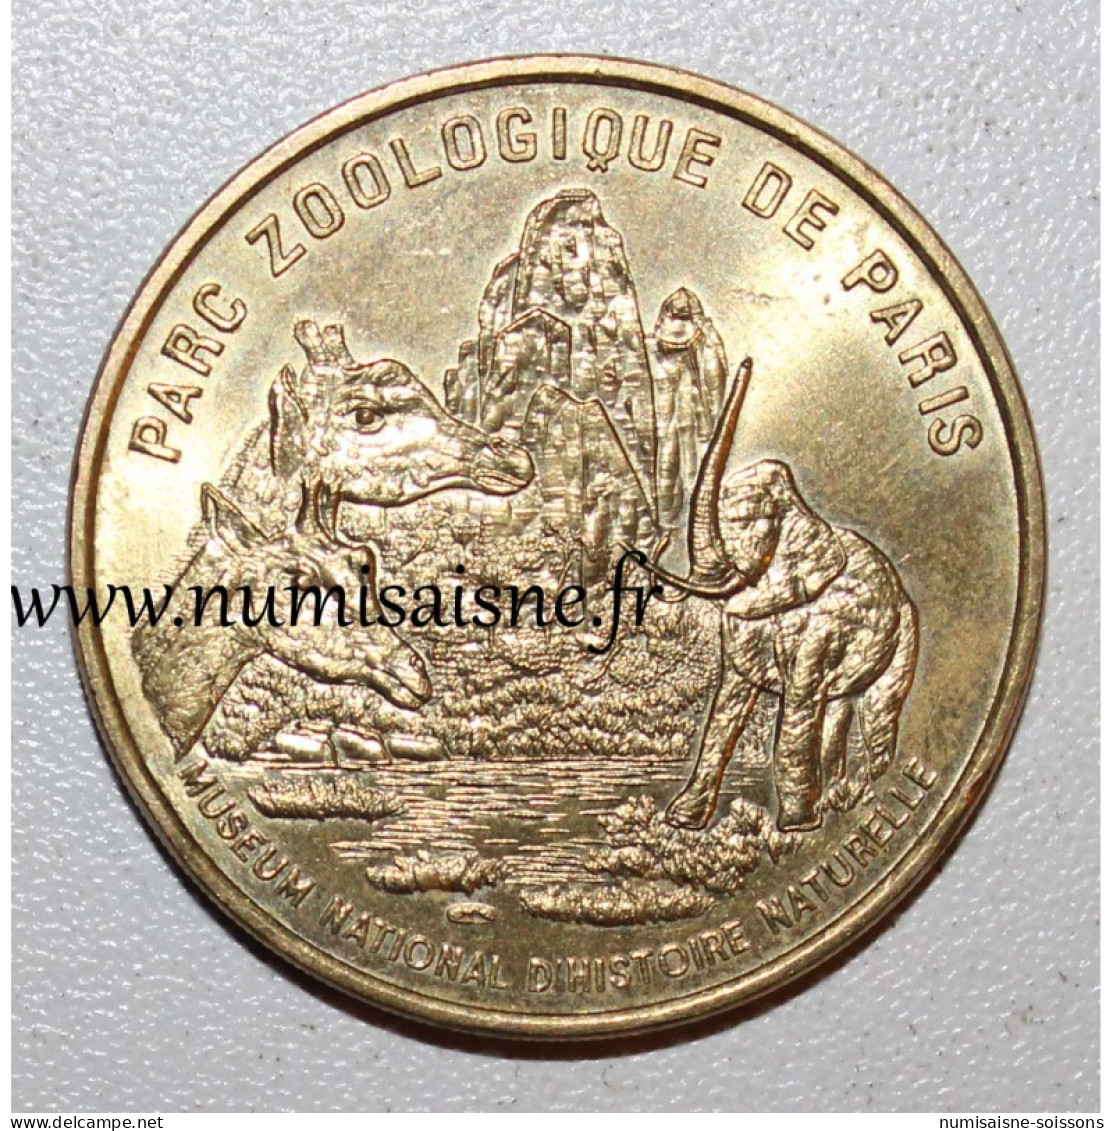 75 - PARIS - PARC ZOOLOGIQUE - Monnaie De Paris - 1998 - TTB/SUP - Zonder Datum